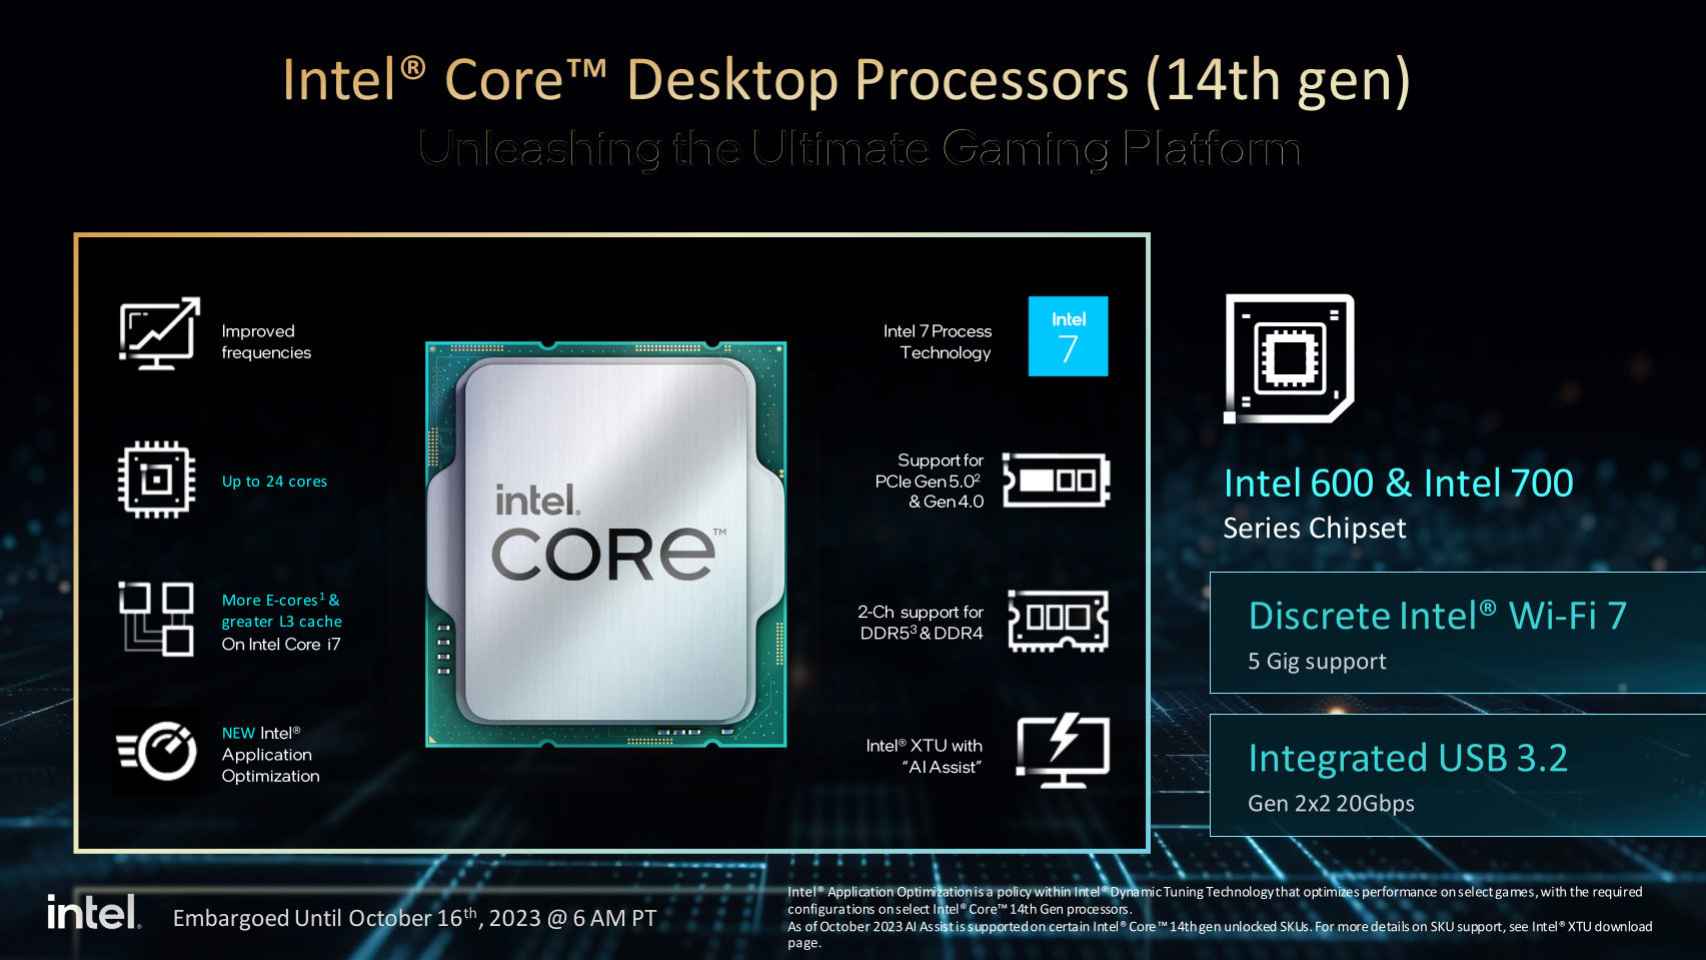 Características técnicas de la 14ª generación de procesadores Intel Core